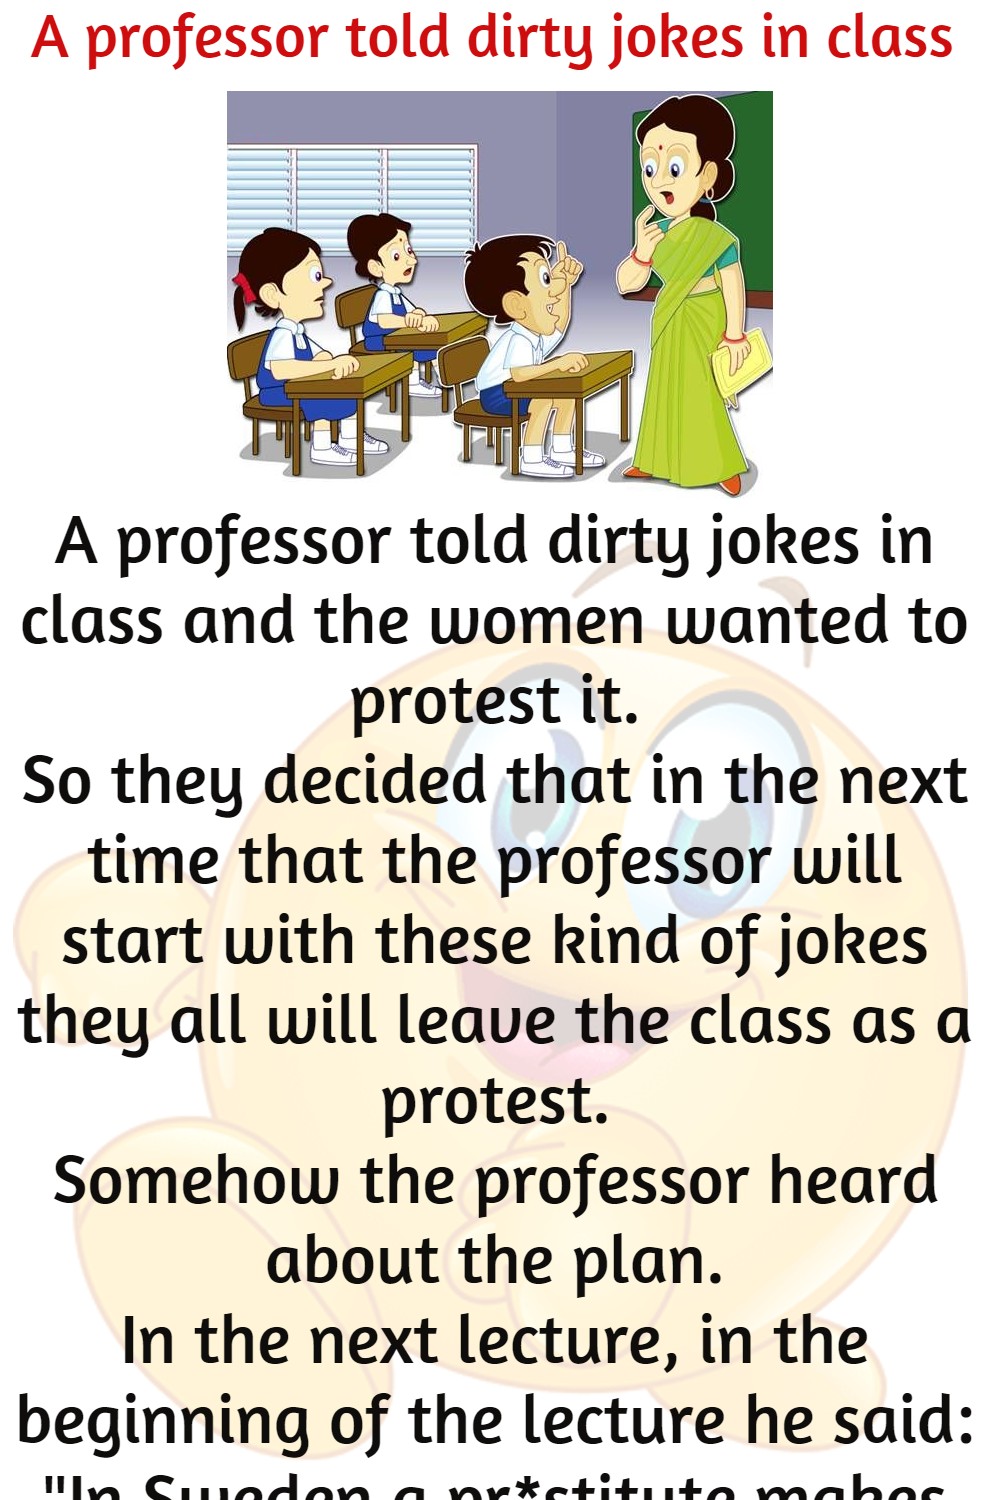 A professor told dirty jokes in class